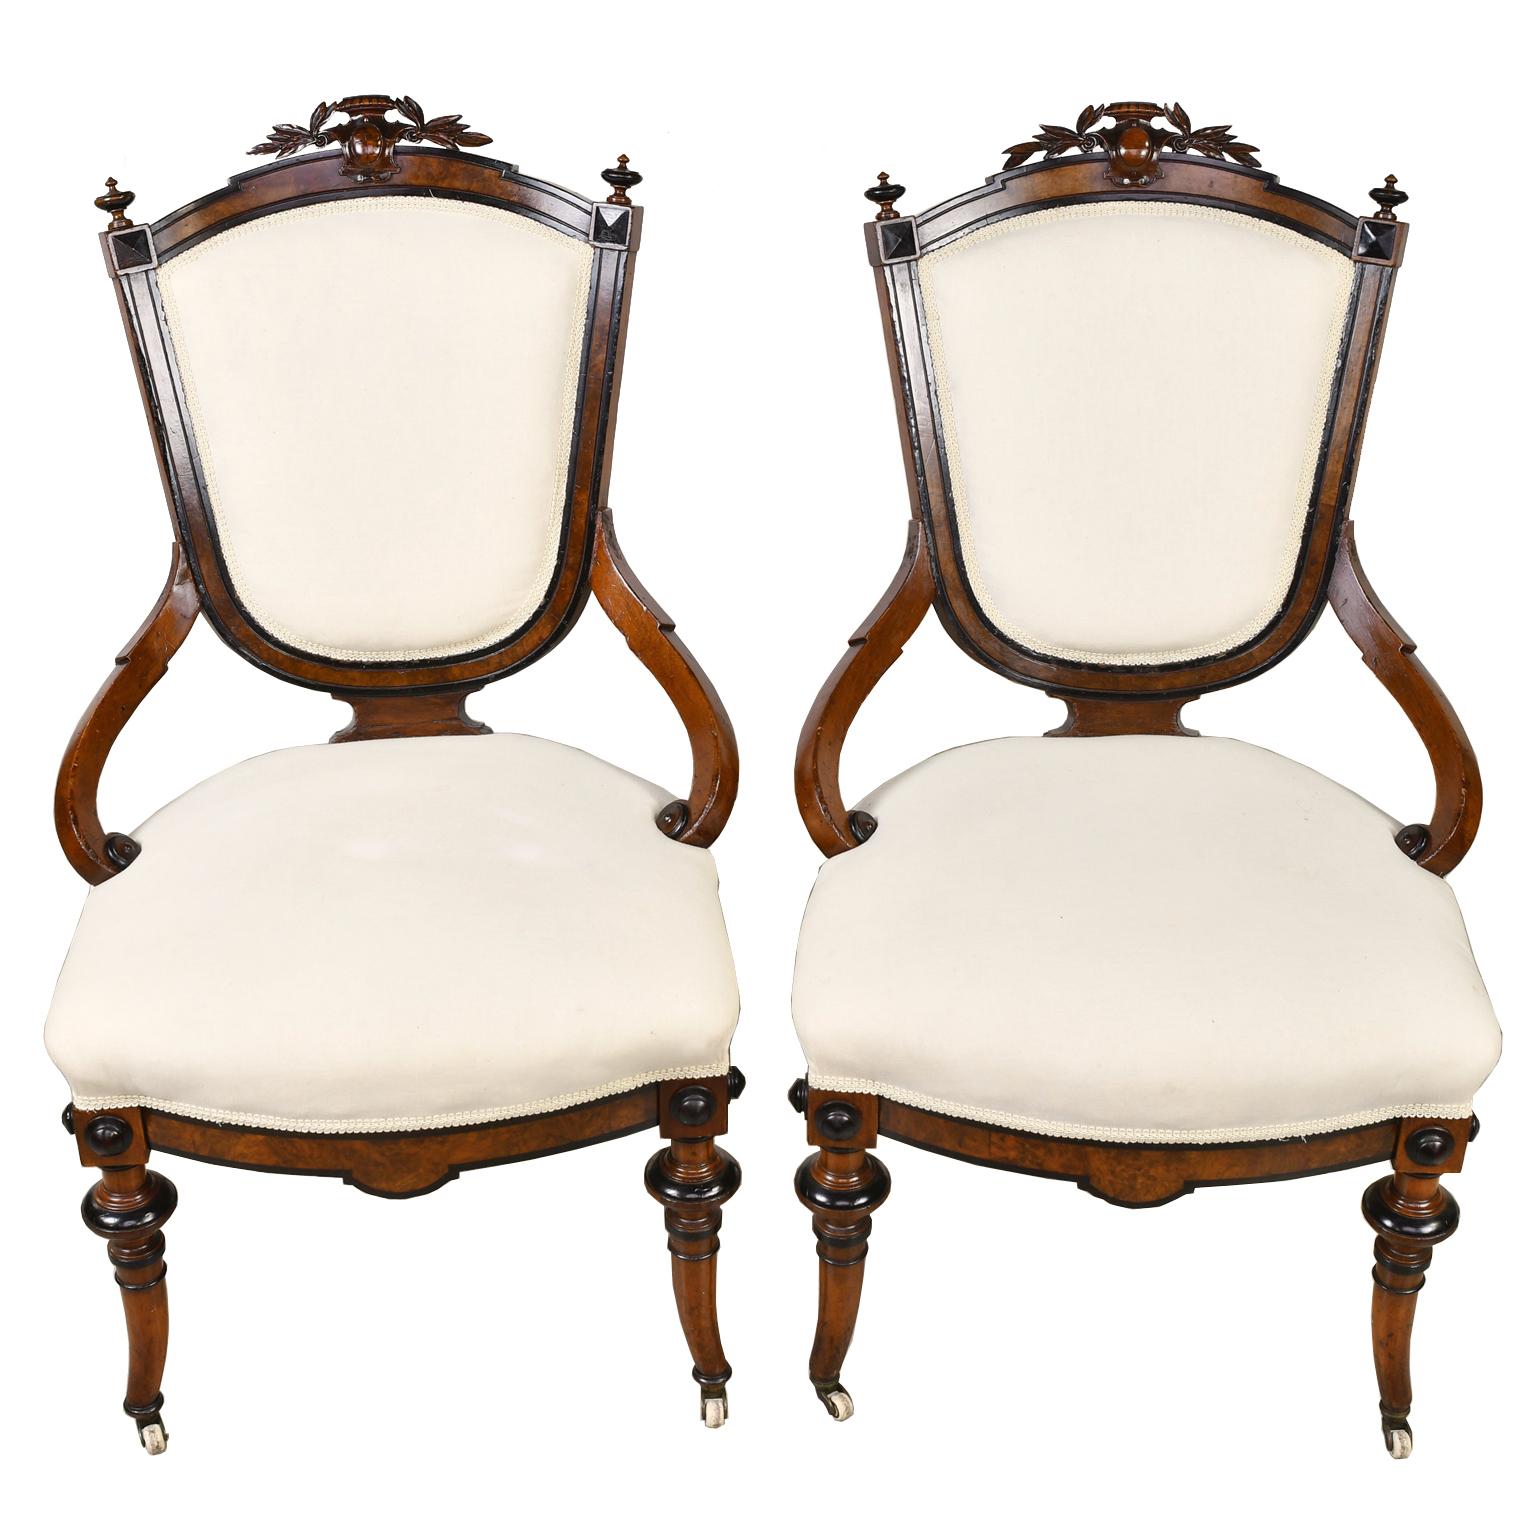 Ein schönes Paar Napoleon-III-Sessel mit Rahmen aus Nussbaum mit genopptem Nussbaum und ebonisierten Details. Schildrücken mit geschnitzten Lorbeerblättern und einer Kartusche über der Kammleiste mit Endstücken an den Ecken. Die Stühle haben eine